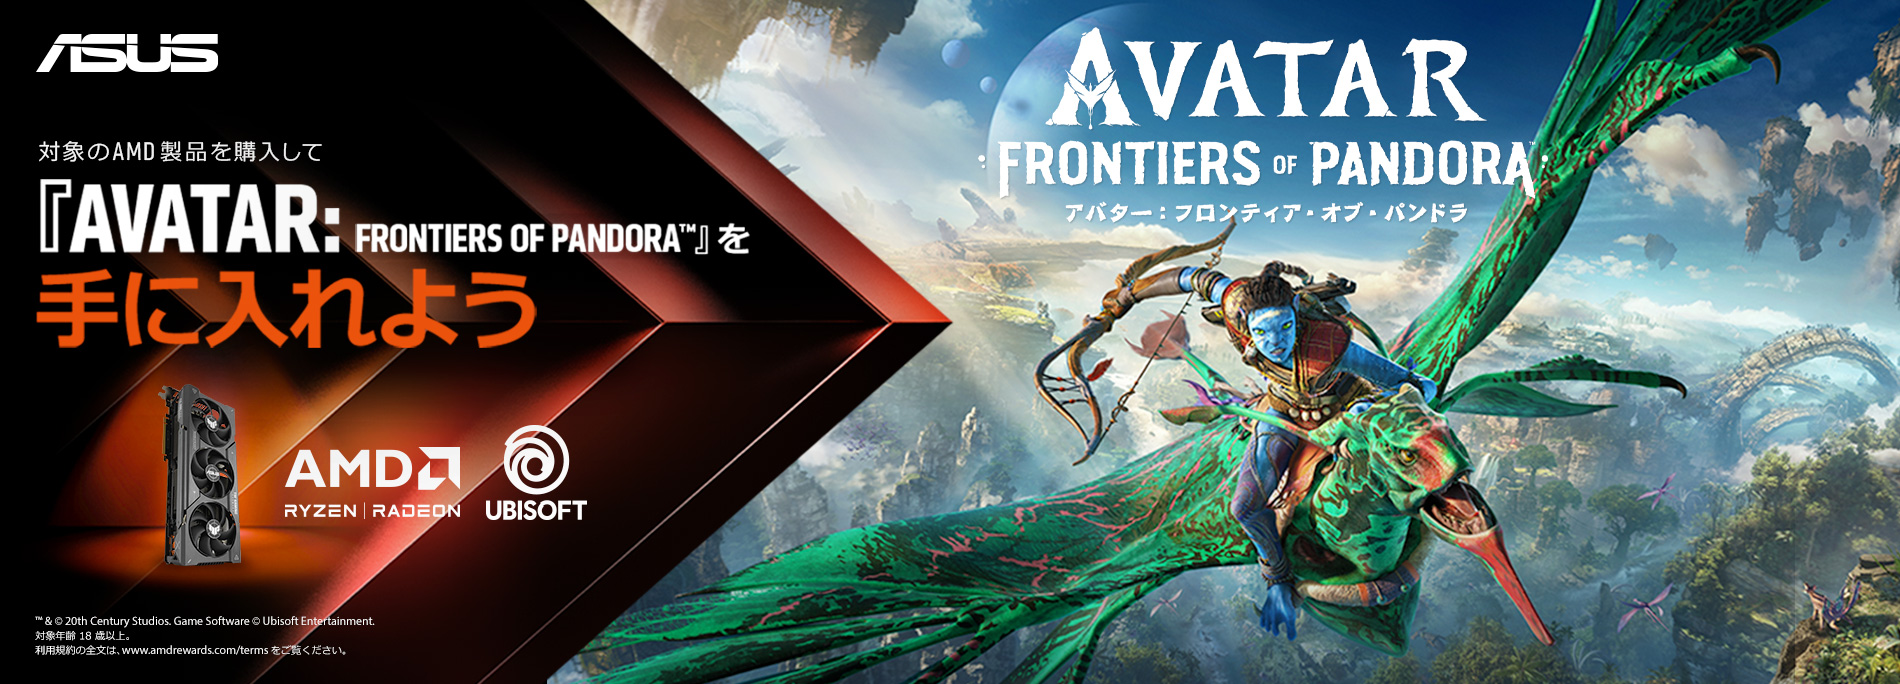 ASUSの AMD Radeon™ RX 7000シリーズが搭載されたビデオカードを購入して『AVATAR: FONTIERS OF PANDORA™』を獲得しよう